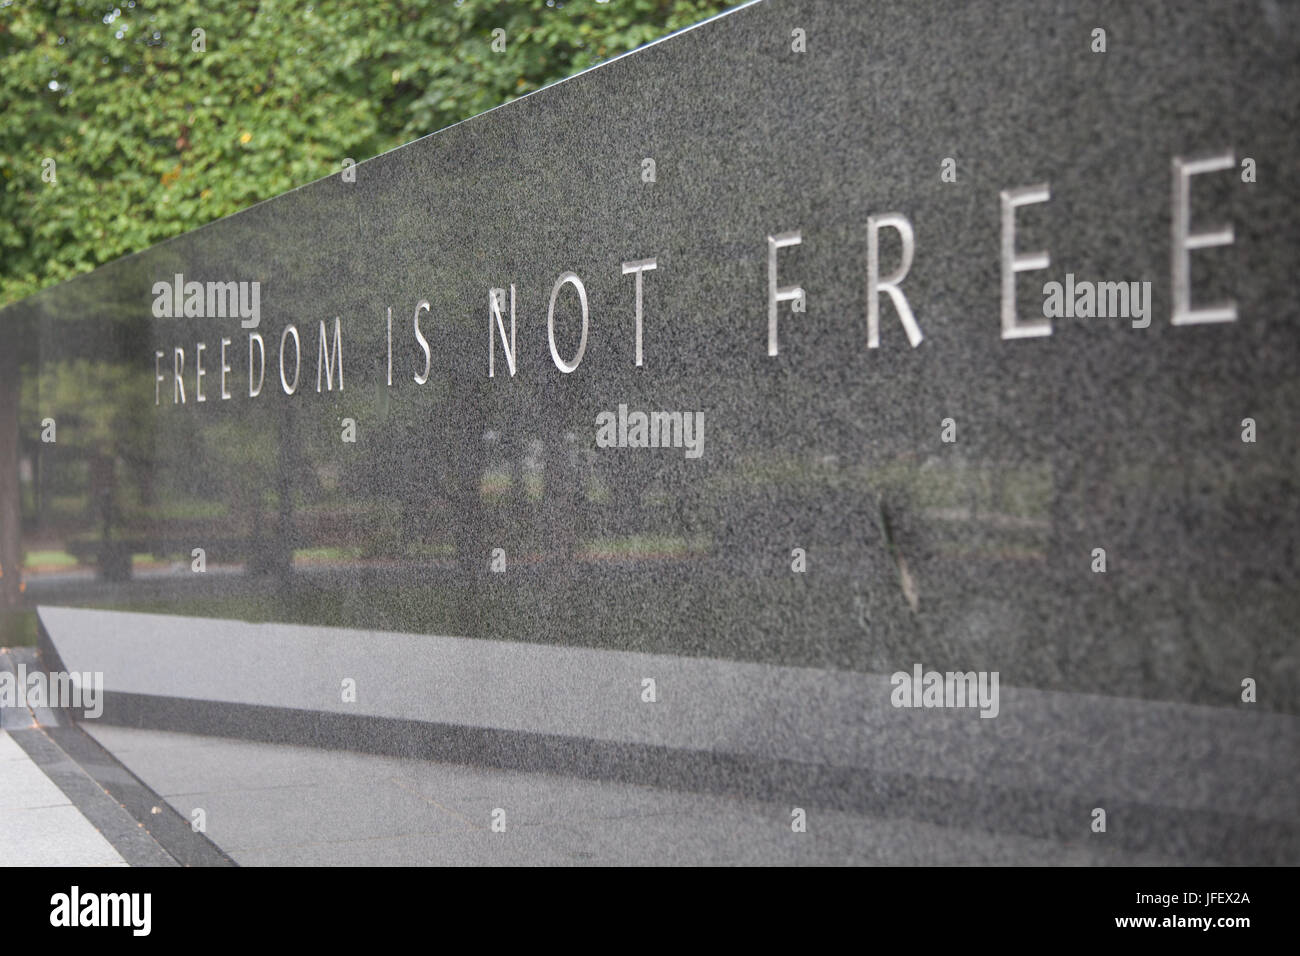 WASHINGTON, DC - Agosto 2012: monumento de granito en el Memorial de la guerra de Corea que dice: "La libertad no es libre". La guerra de Corea Memorial se encuentra ubicado en nosotros Foto de stock